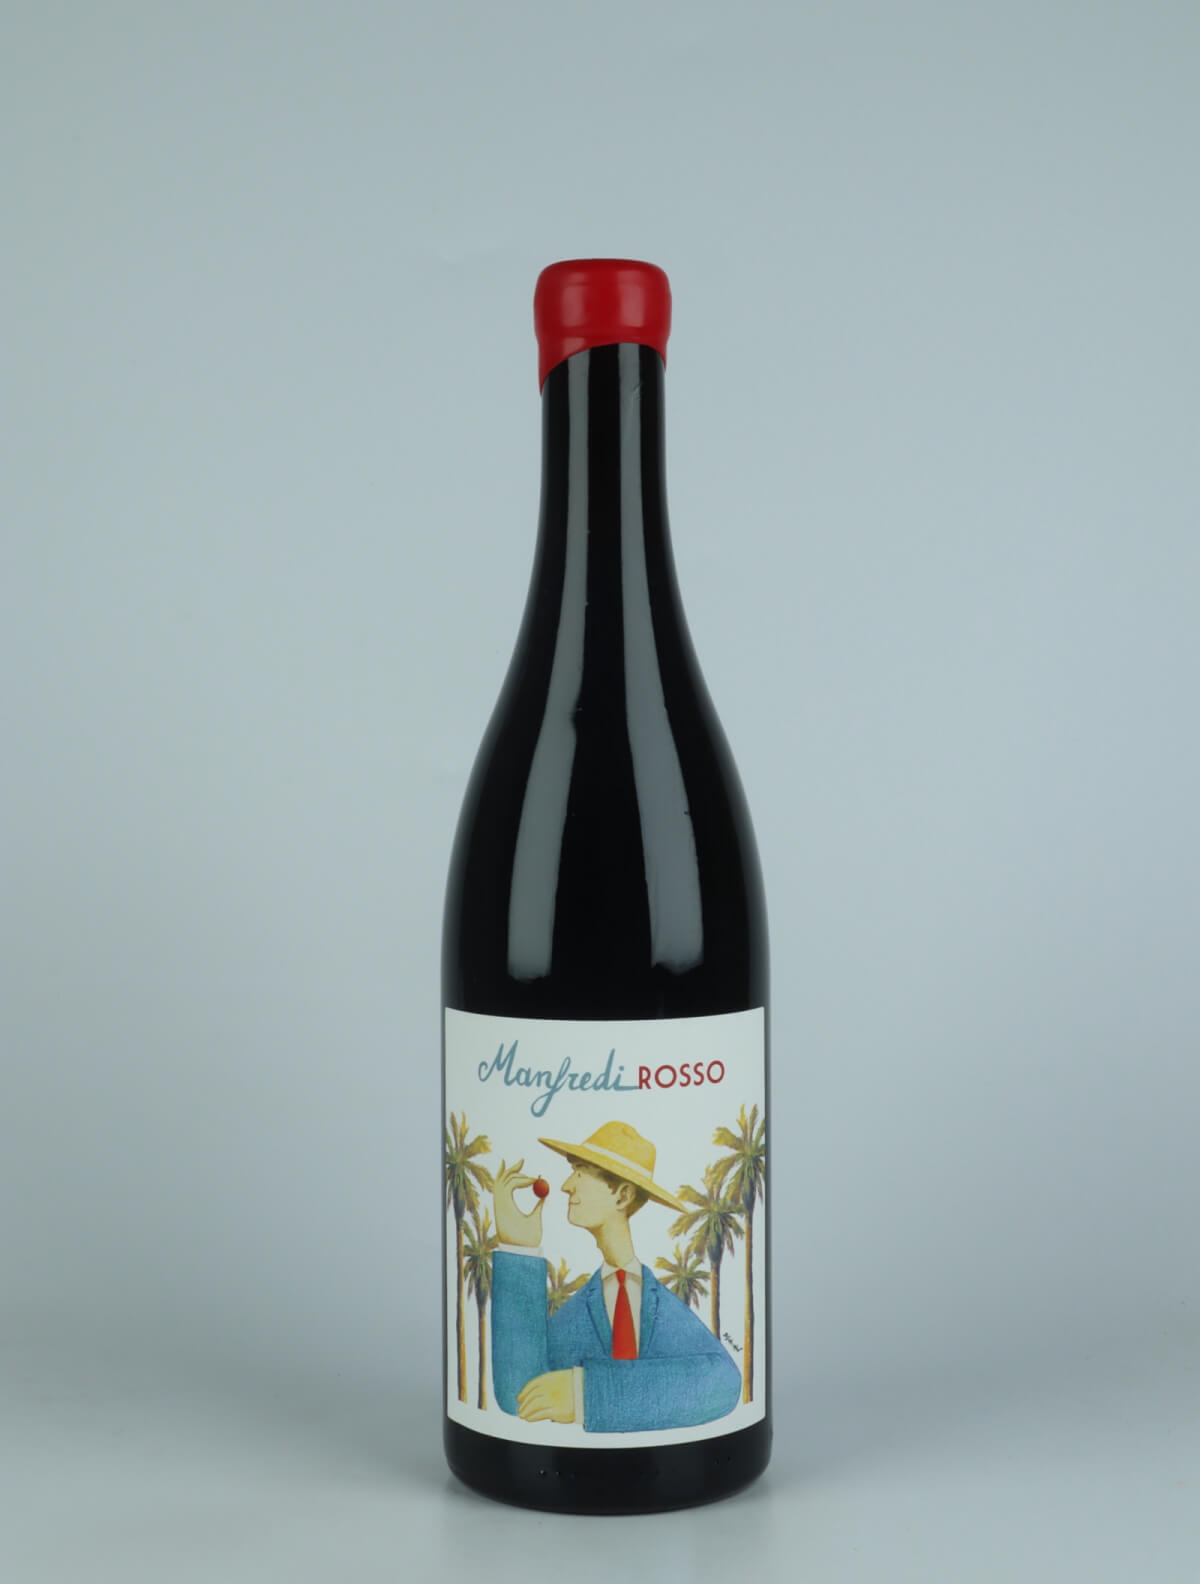 En flaske 2022 Manfredi Rosso Rødvin fra Manfredi Franco, Sicilien i Italien